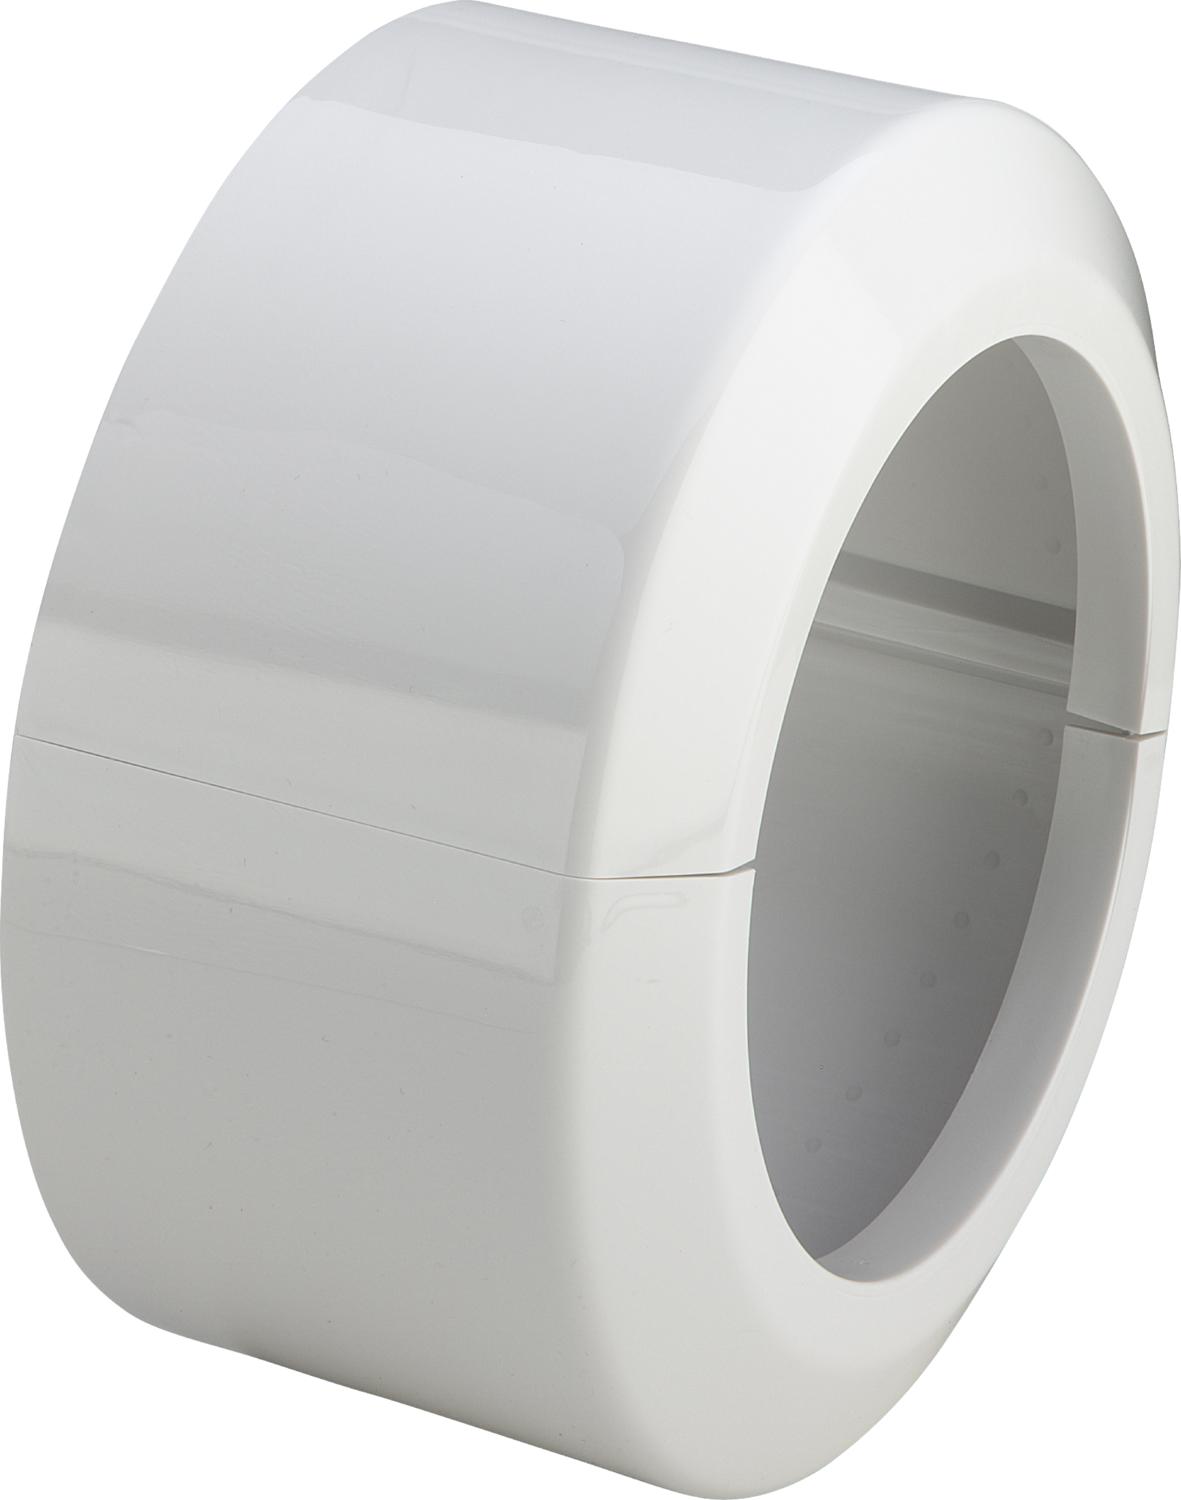 εικόνα του VIEGA rosette for WC connection elbow and socket 110x165x90, 101343 / 3821 white